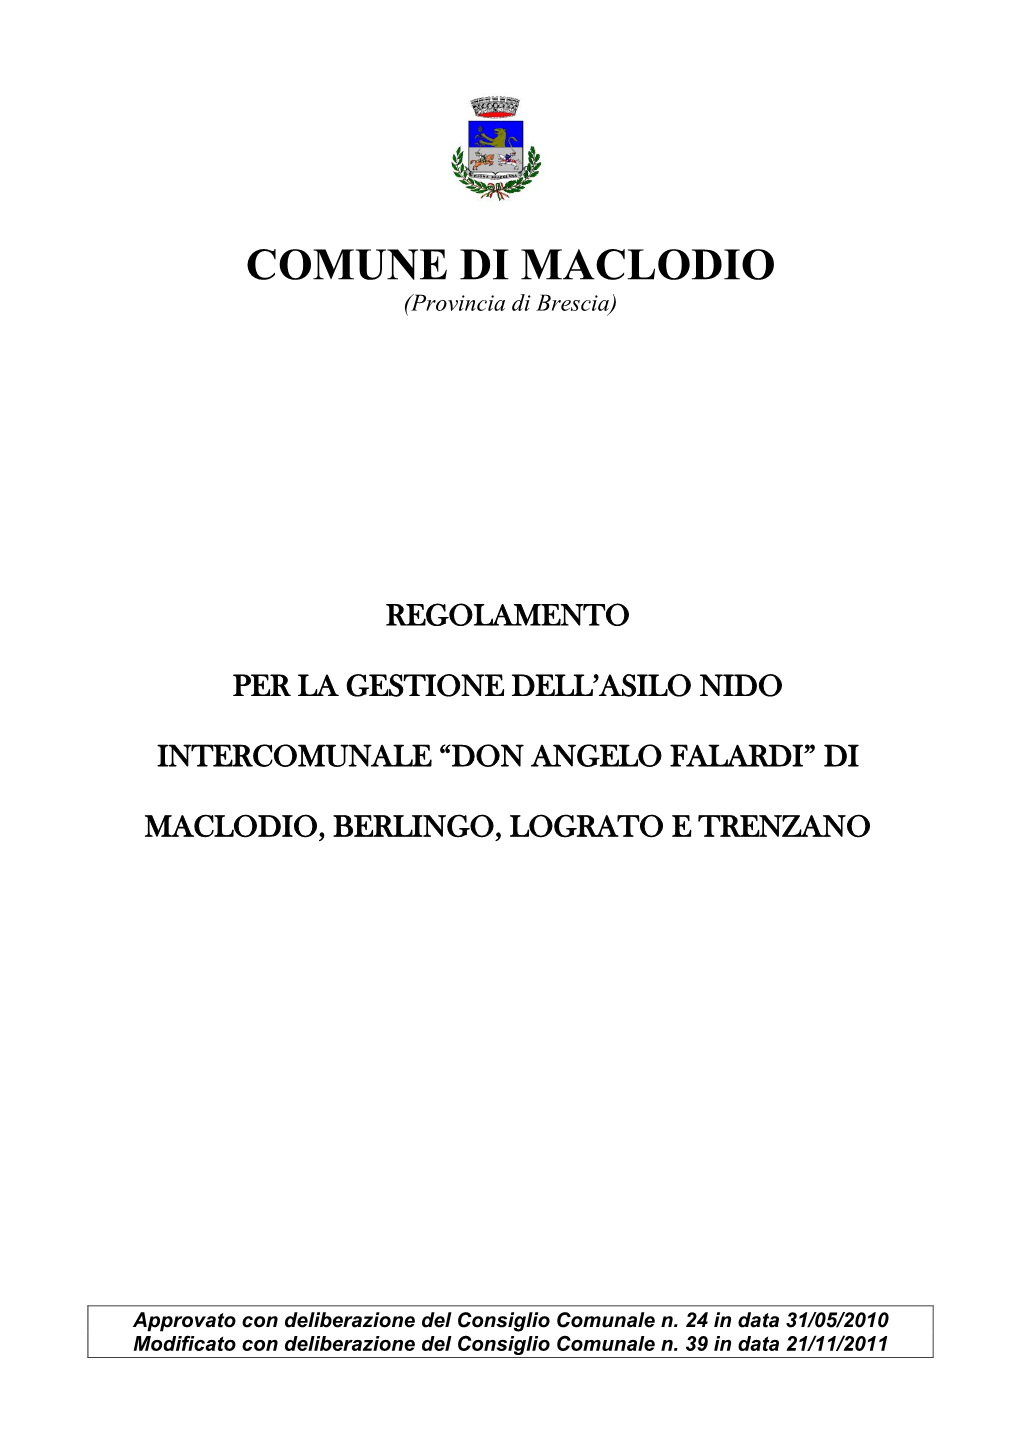 COMUNE DI MACLODIO (Provincia Di Brescia)